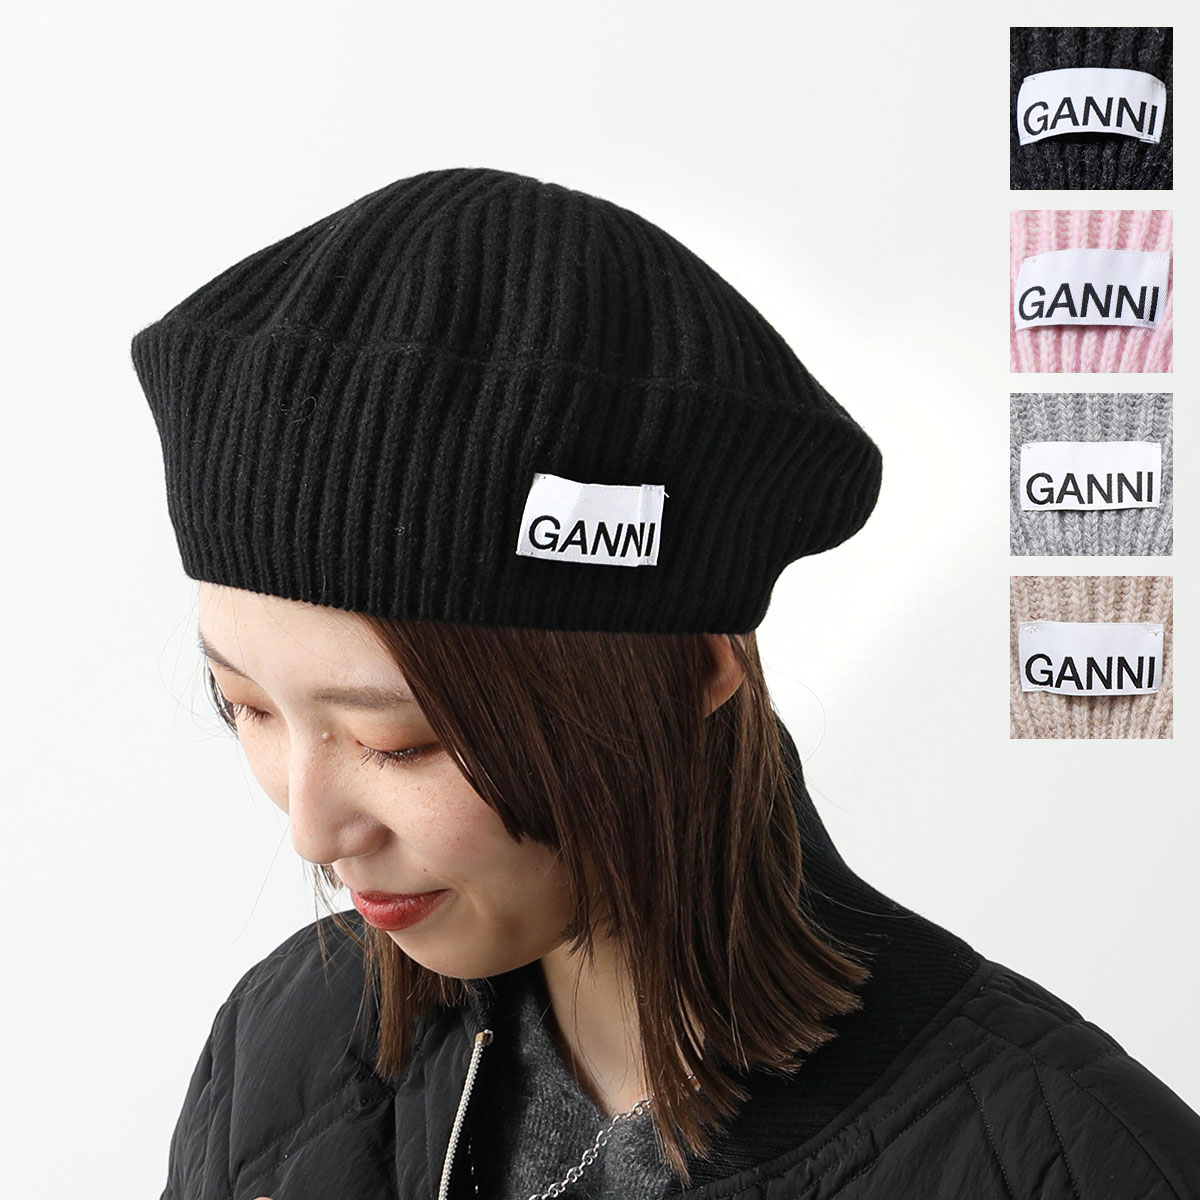 GANNI ガニー ベレー帽 A4430 5789 レディース ニット リブ ロゴ ウールブレンド ニットキャップ 帽子 カラー3色 |  インポートセレクト musee